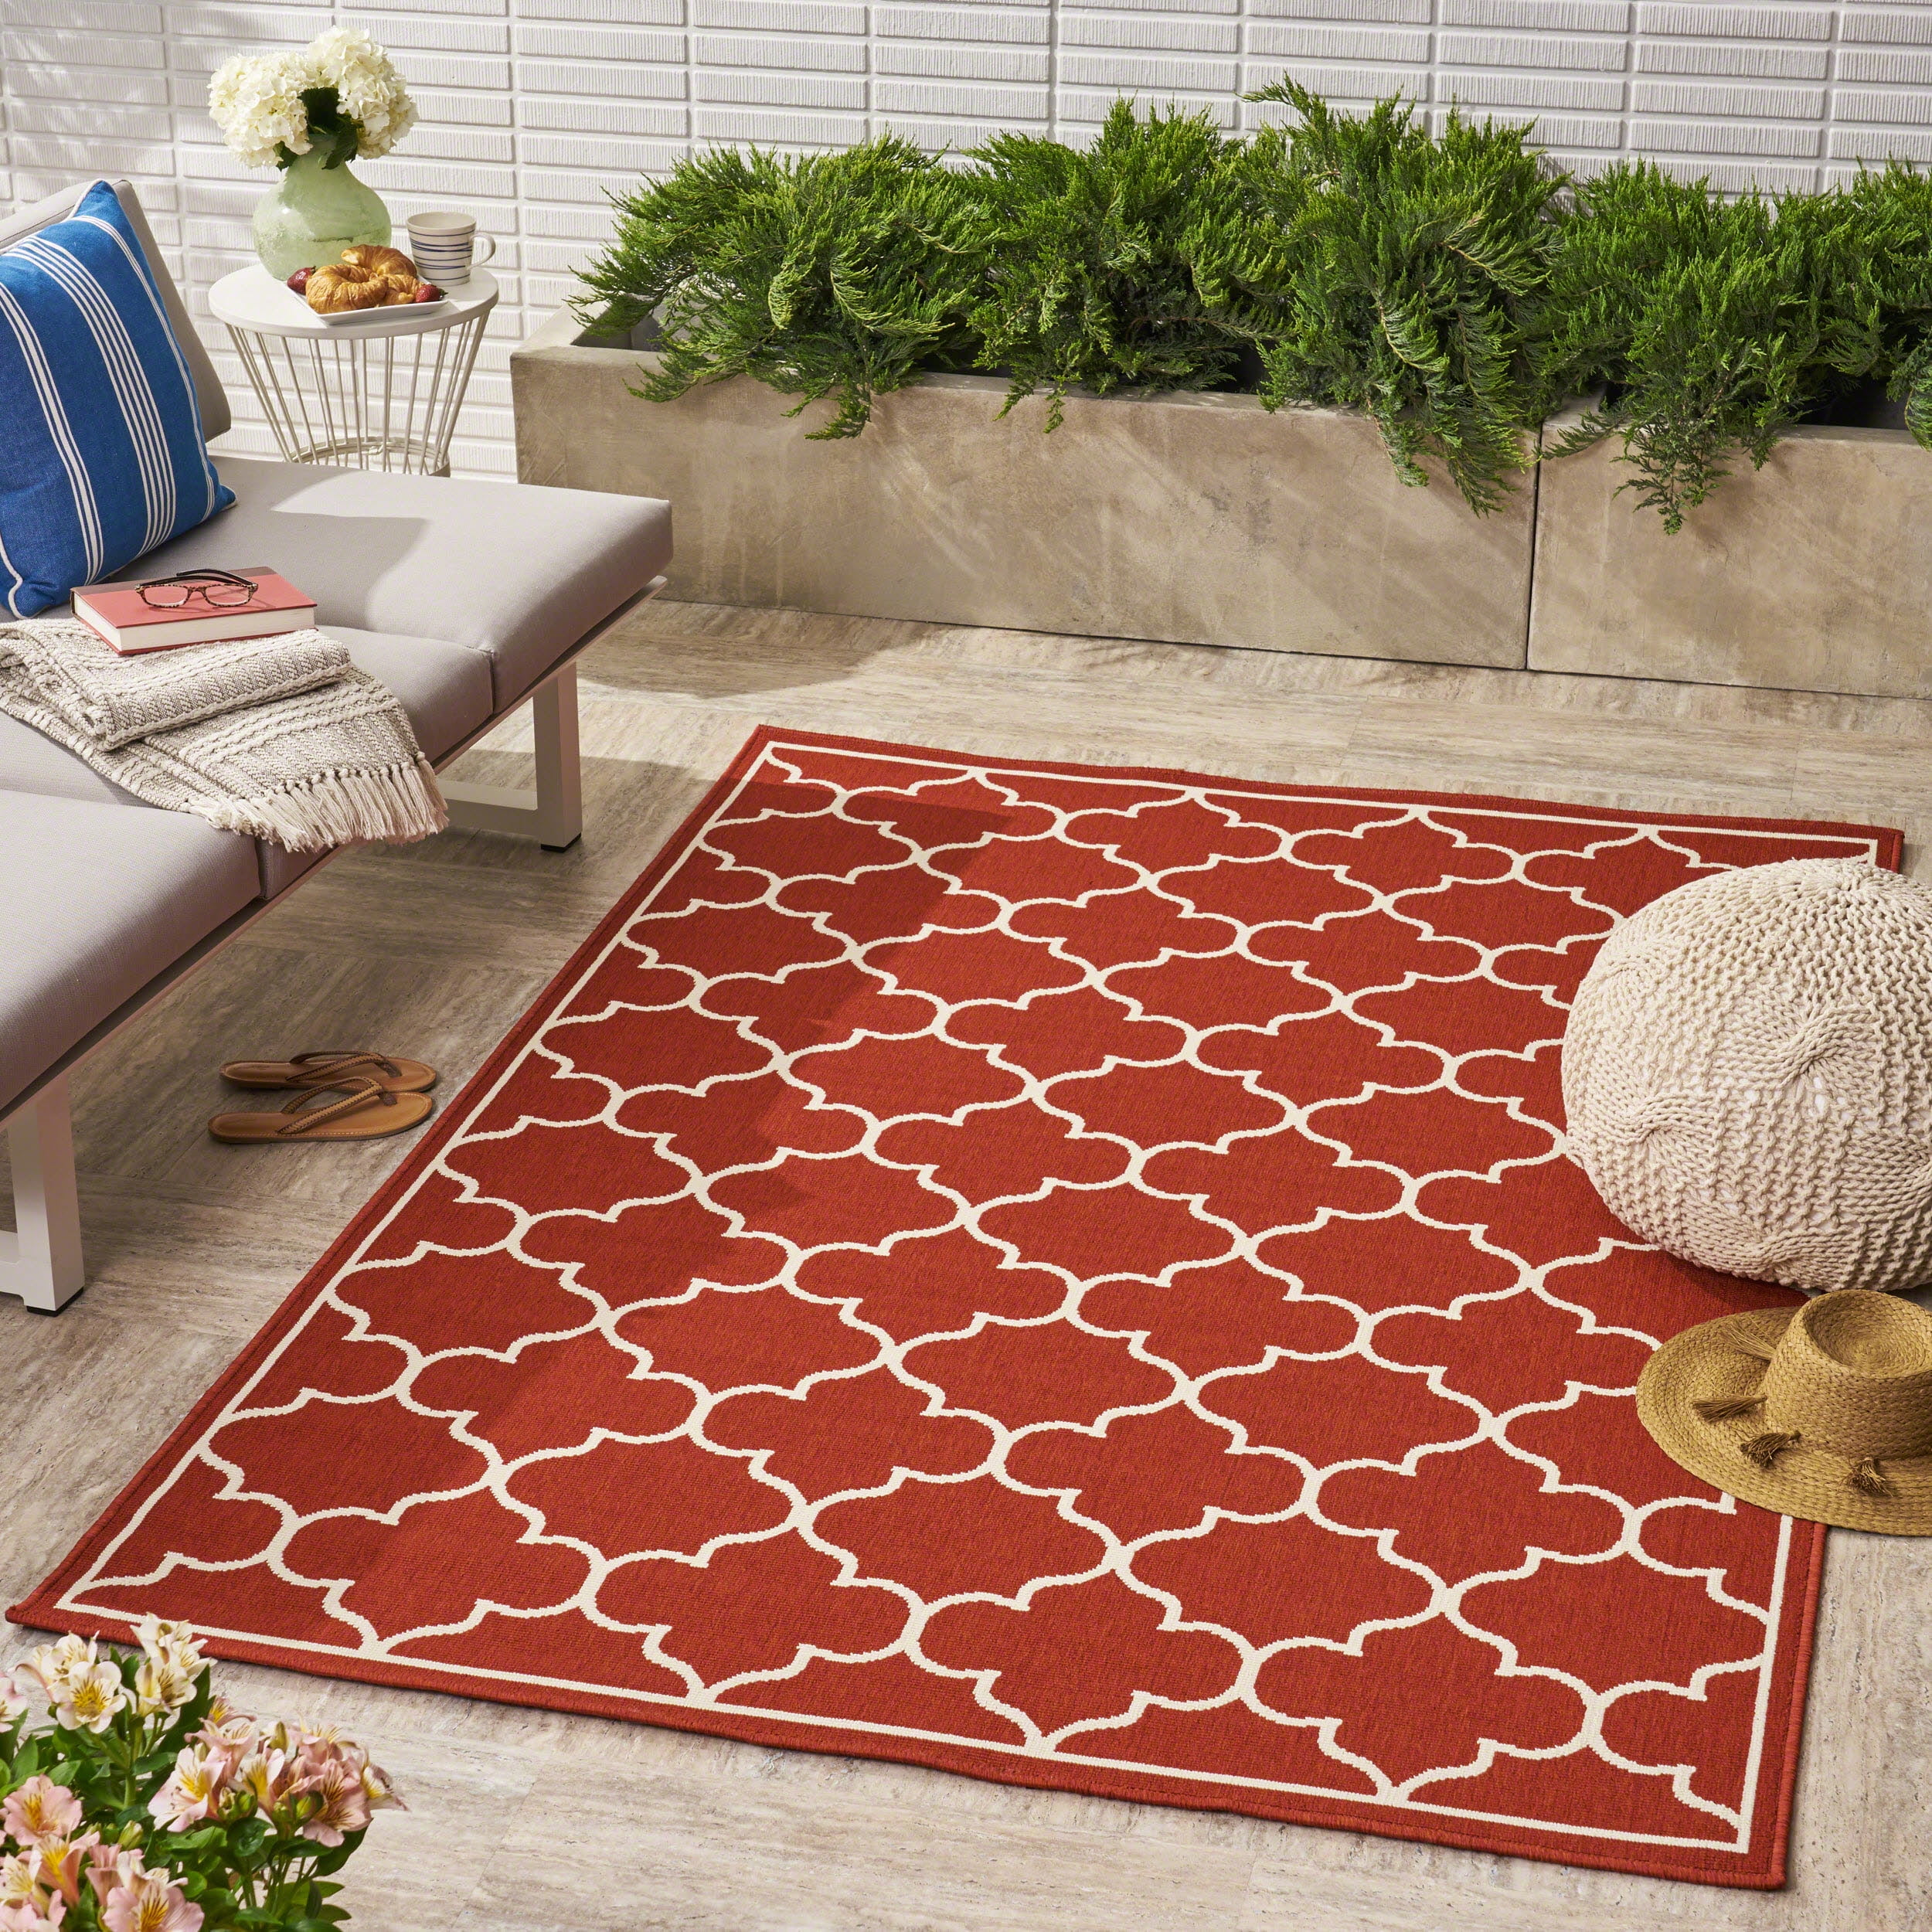 Indoor/ Outdoor Geometric 5 x 8 Area Rug, Red,Ivory - Walmart.com ...